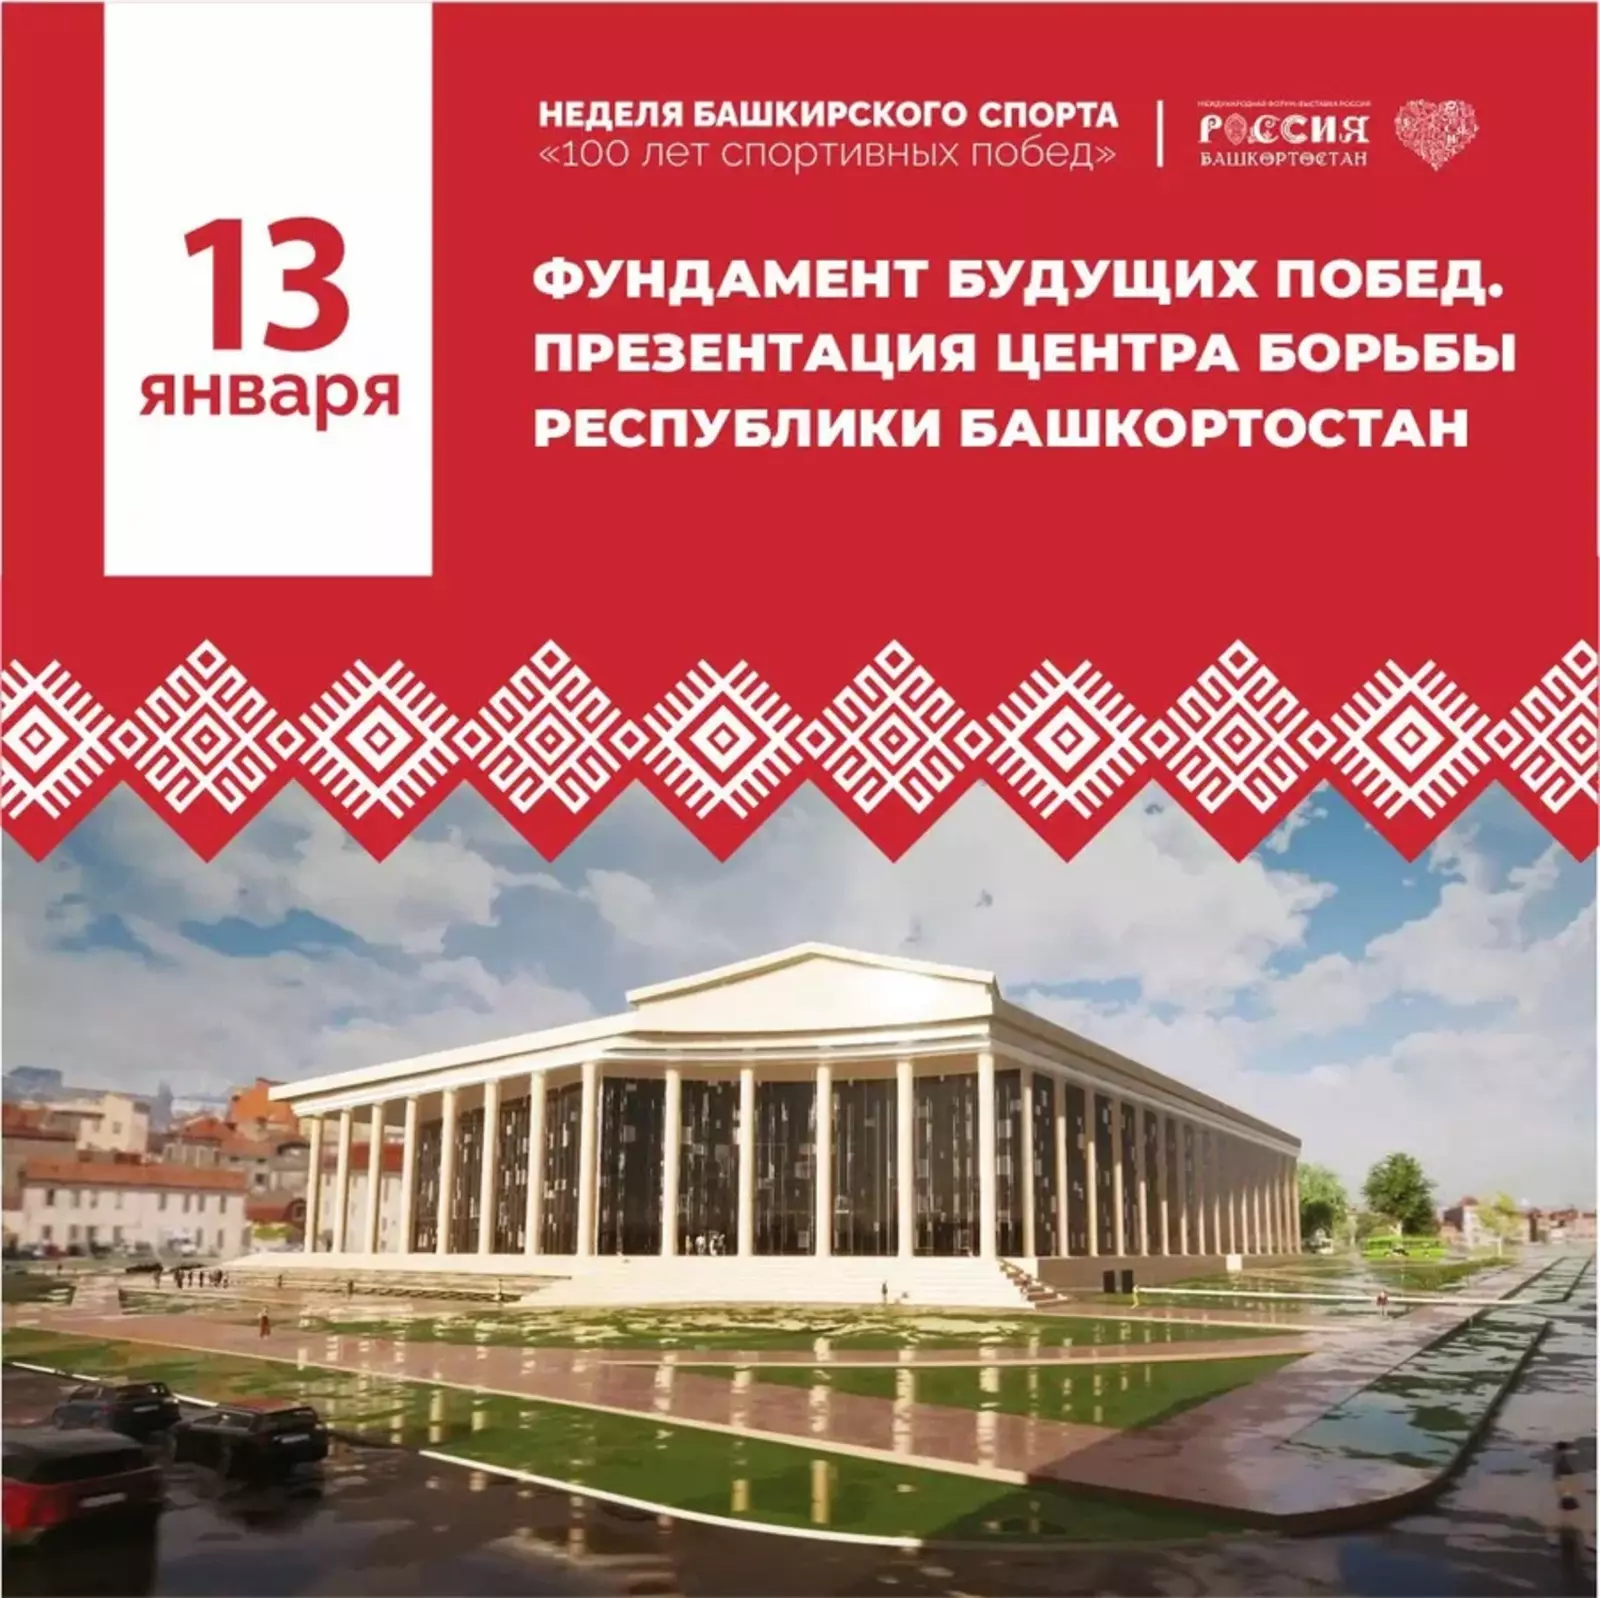 На Международной выставке-форуме «Россия» проходит неделя башкирского спорта